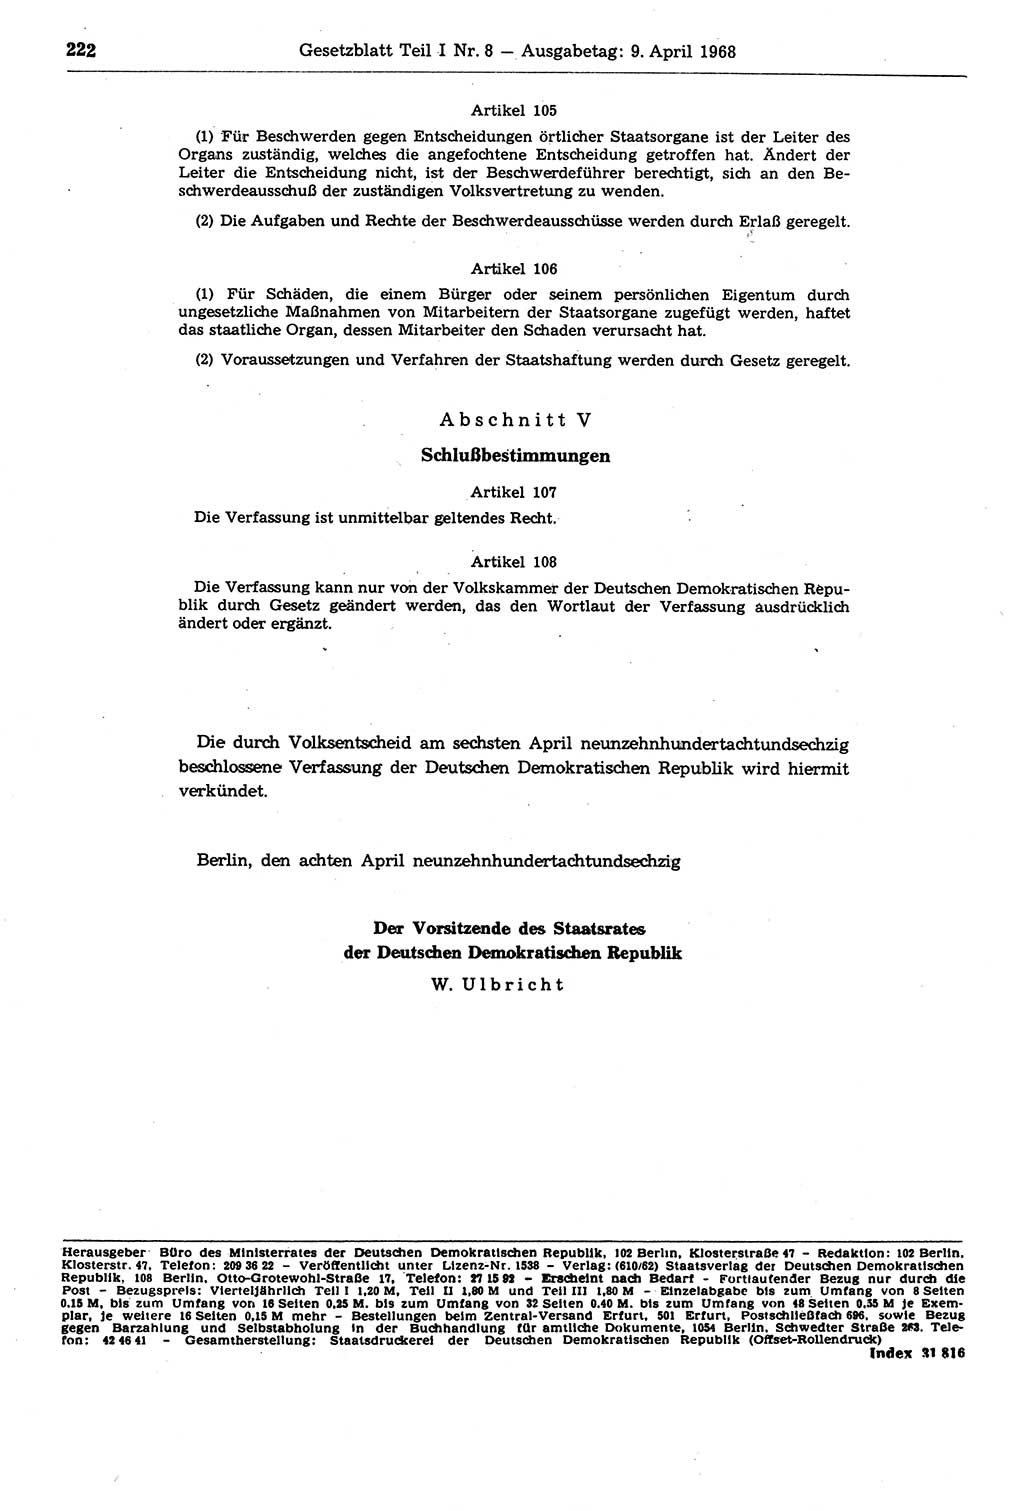 Gesetzblatt (GBl.) der Deutschen Demokratischen Republik (DDR) Teil Ⅰ 1968, Seite 222 (GBl. DDR Ⅰ 1968, S. 222)